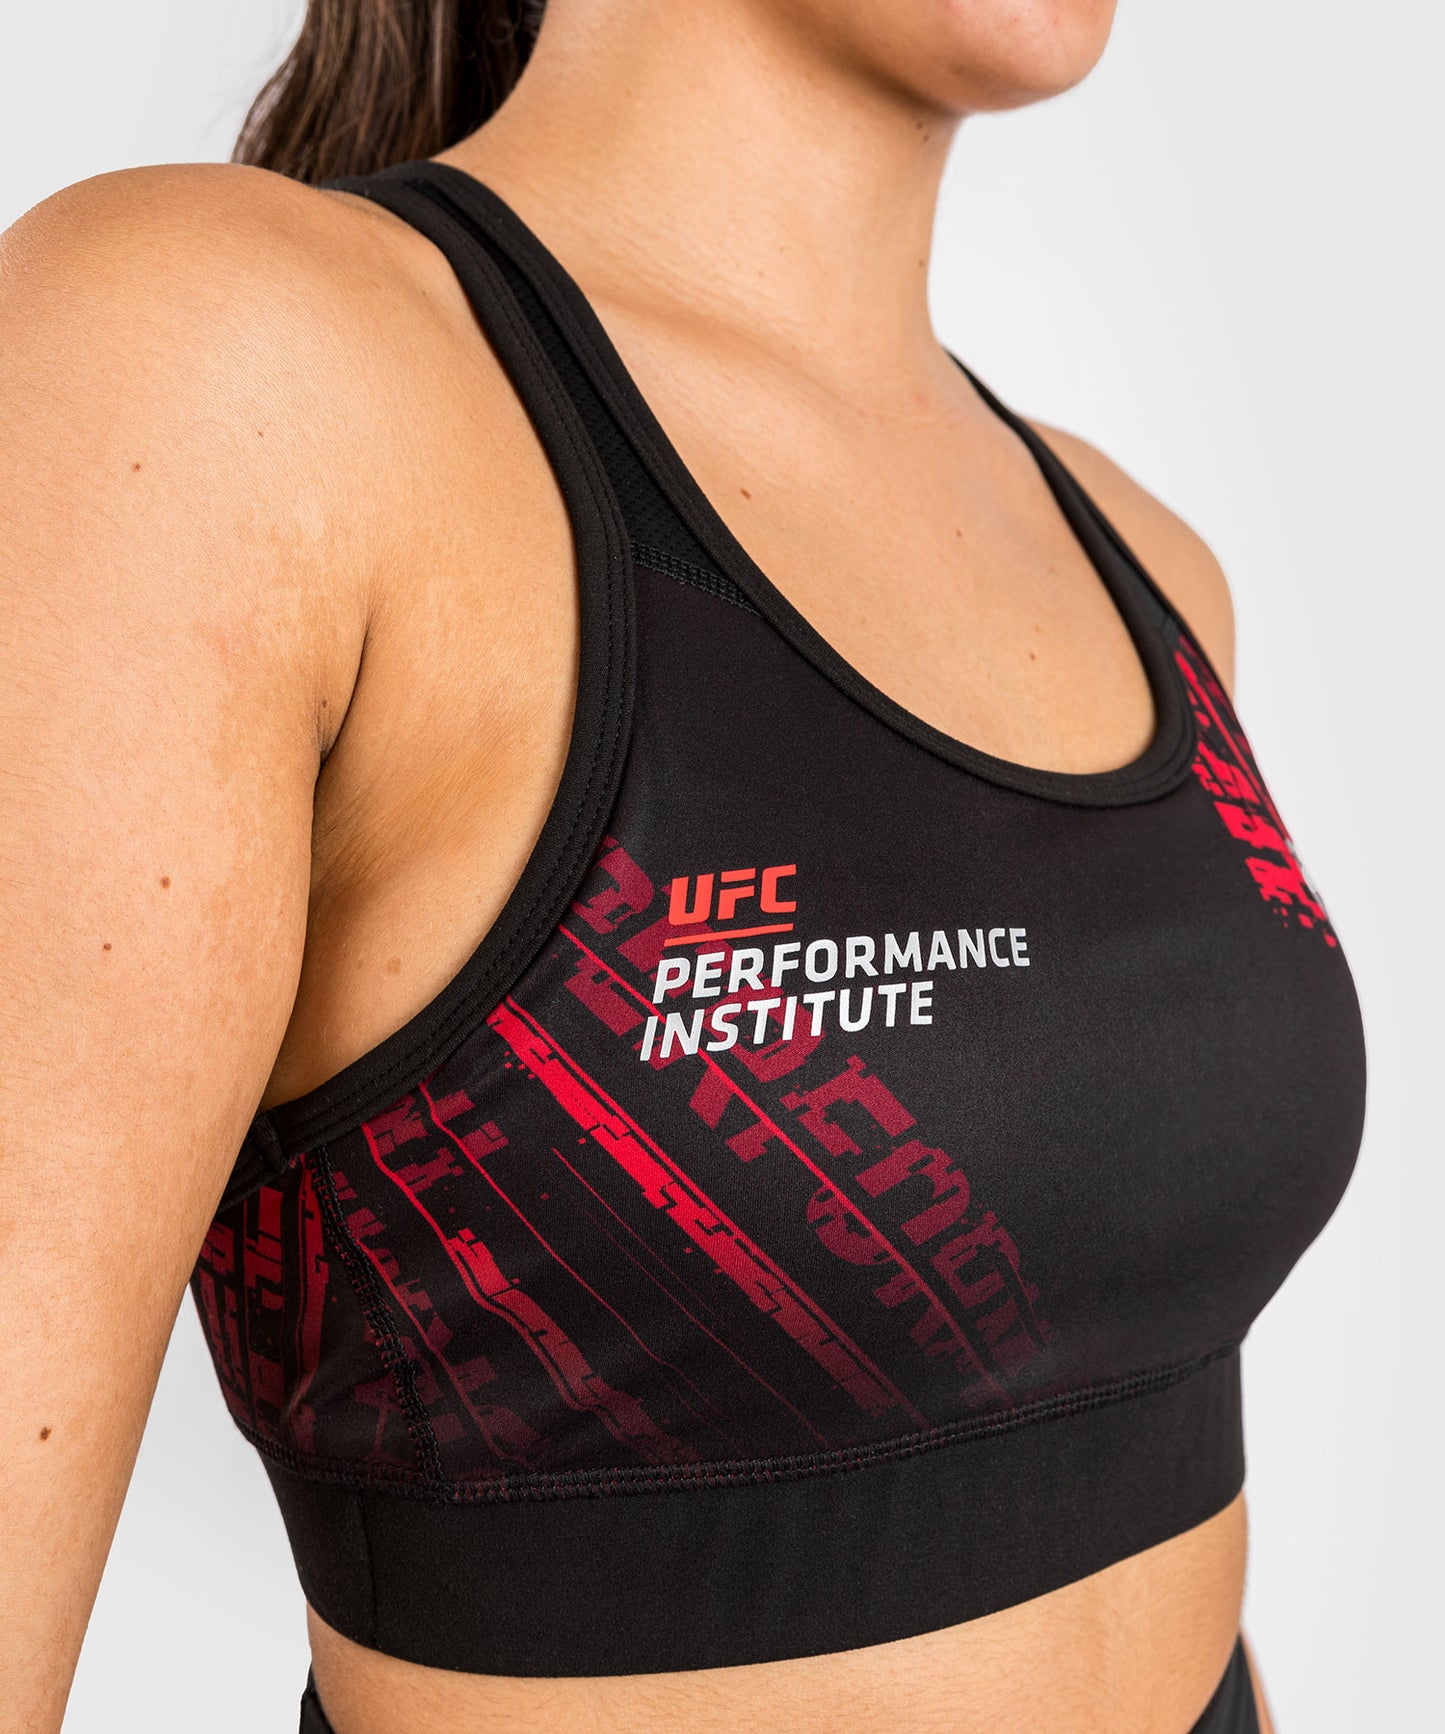 UFC Performance Institute 2.0 Reggiseno sportivo da donna - Nero/Rosso